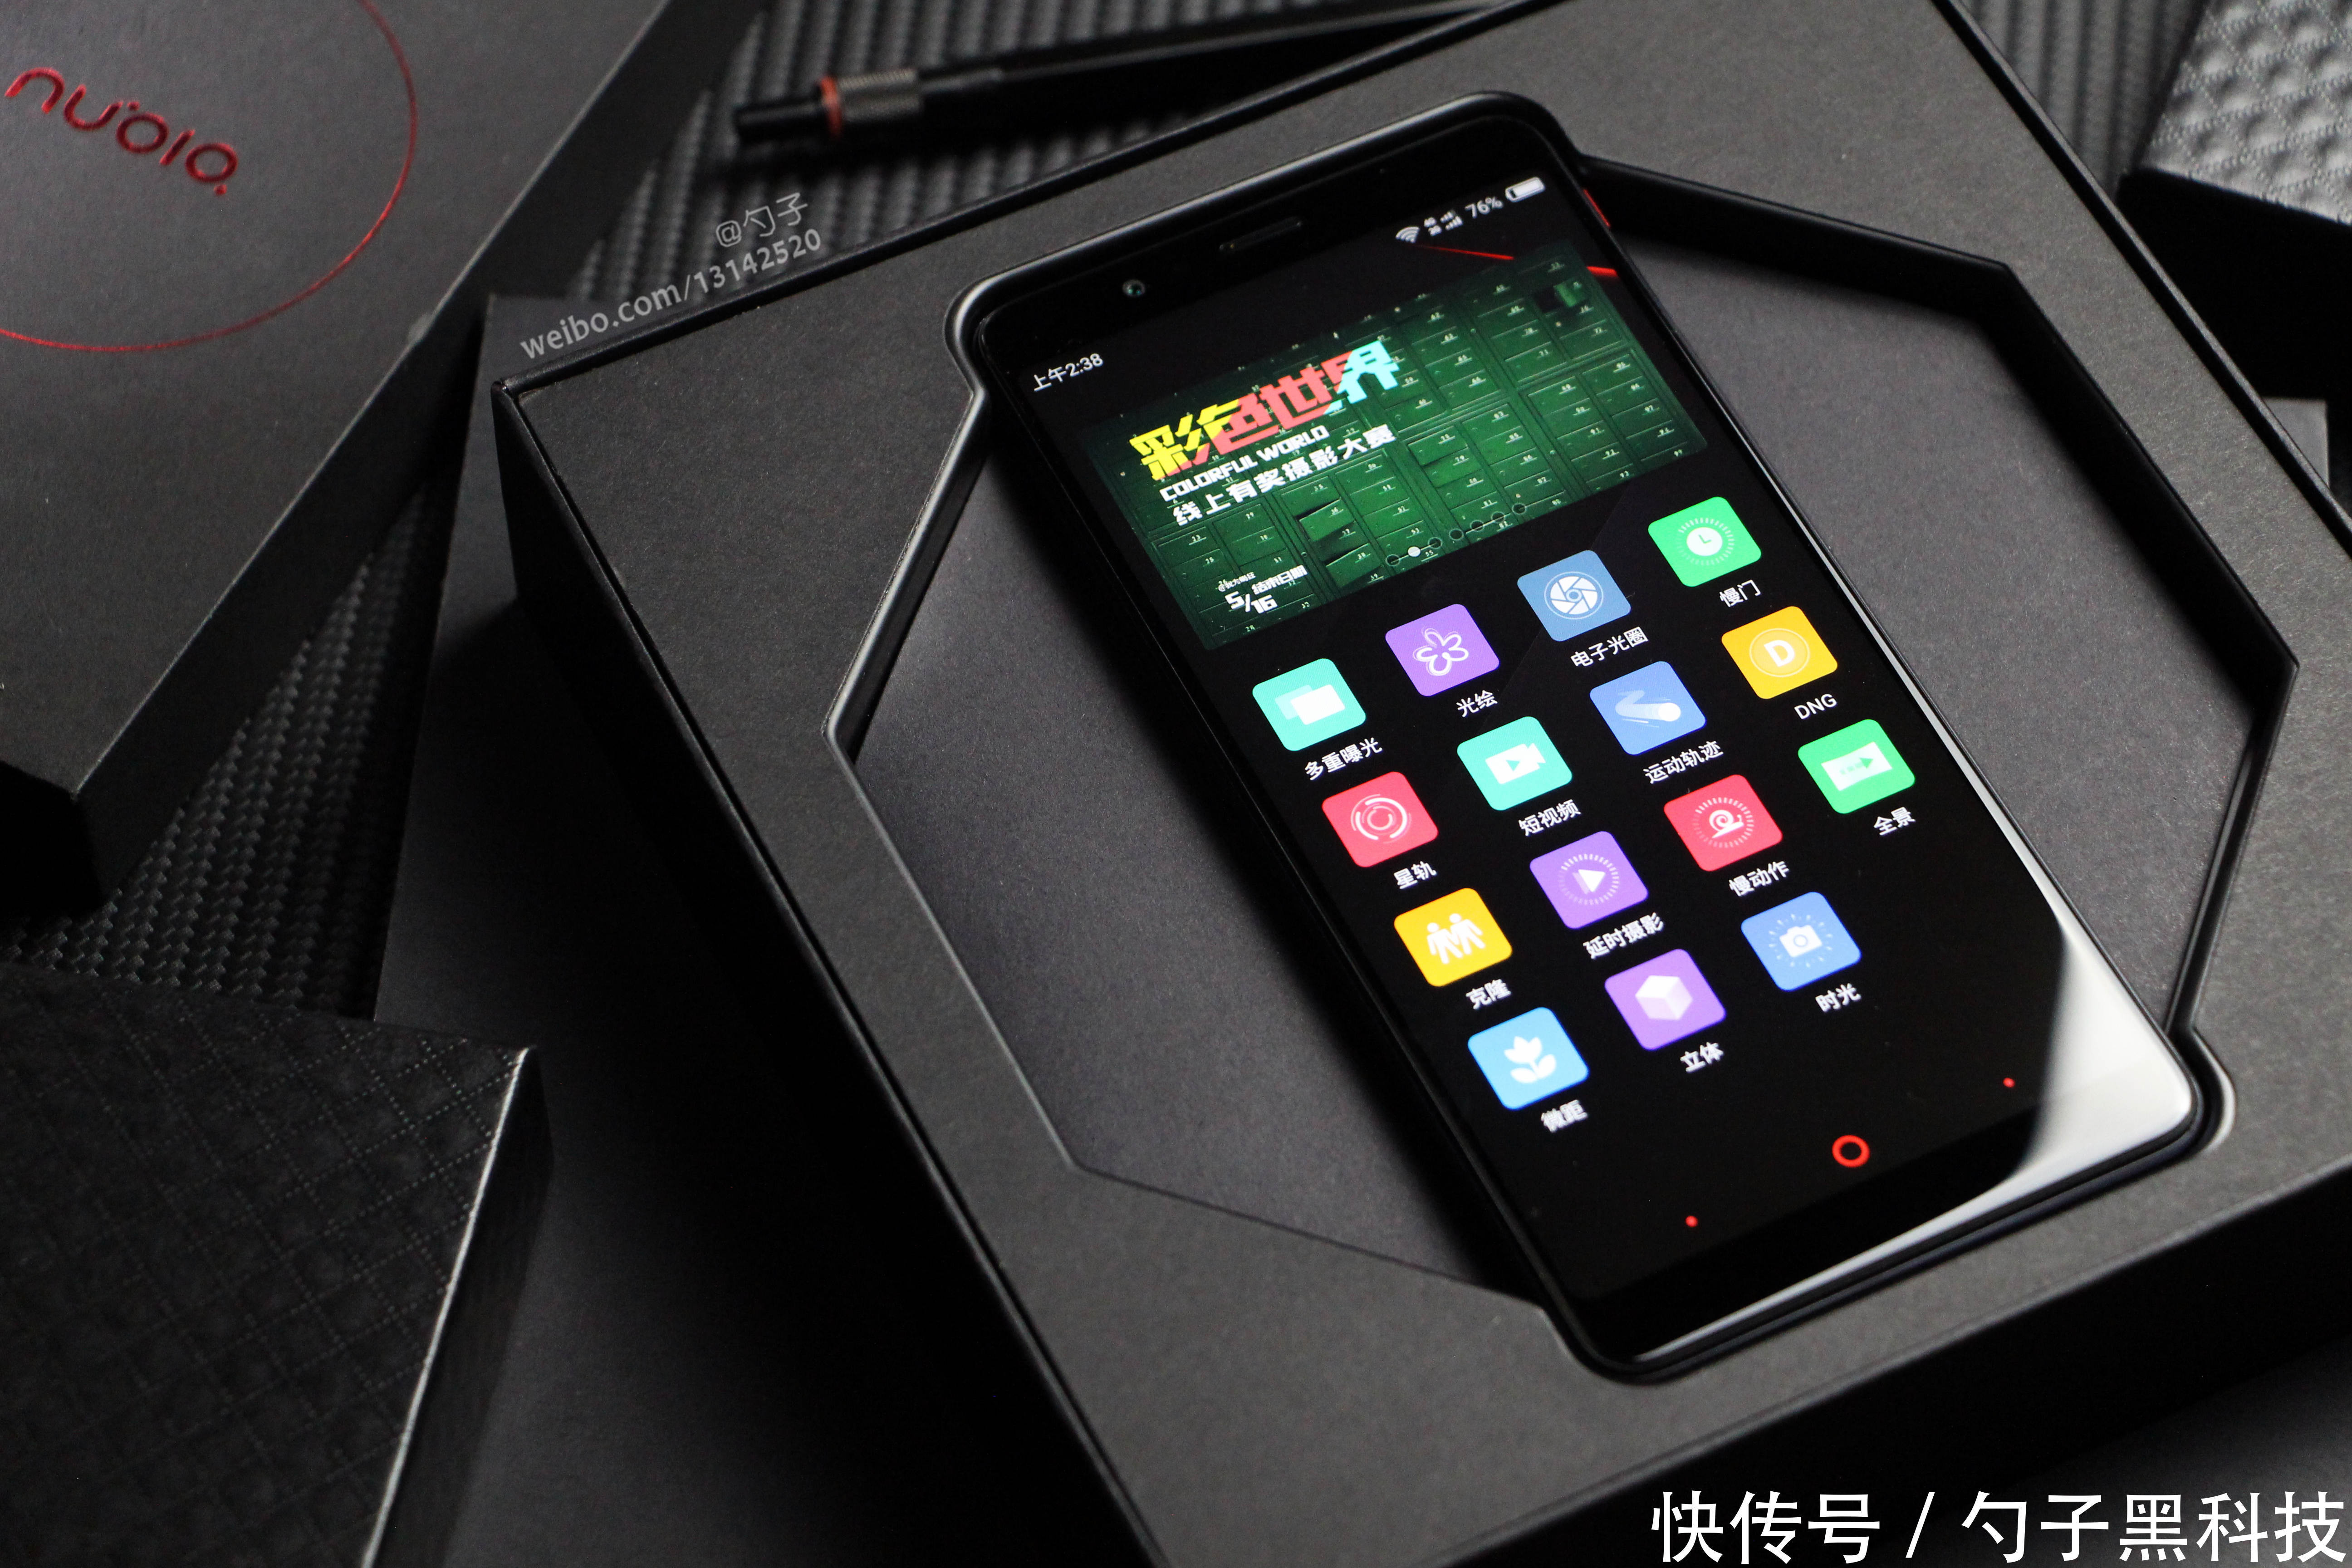 努比亚红魔电竞游戏手机,从设计到性能都帅到